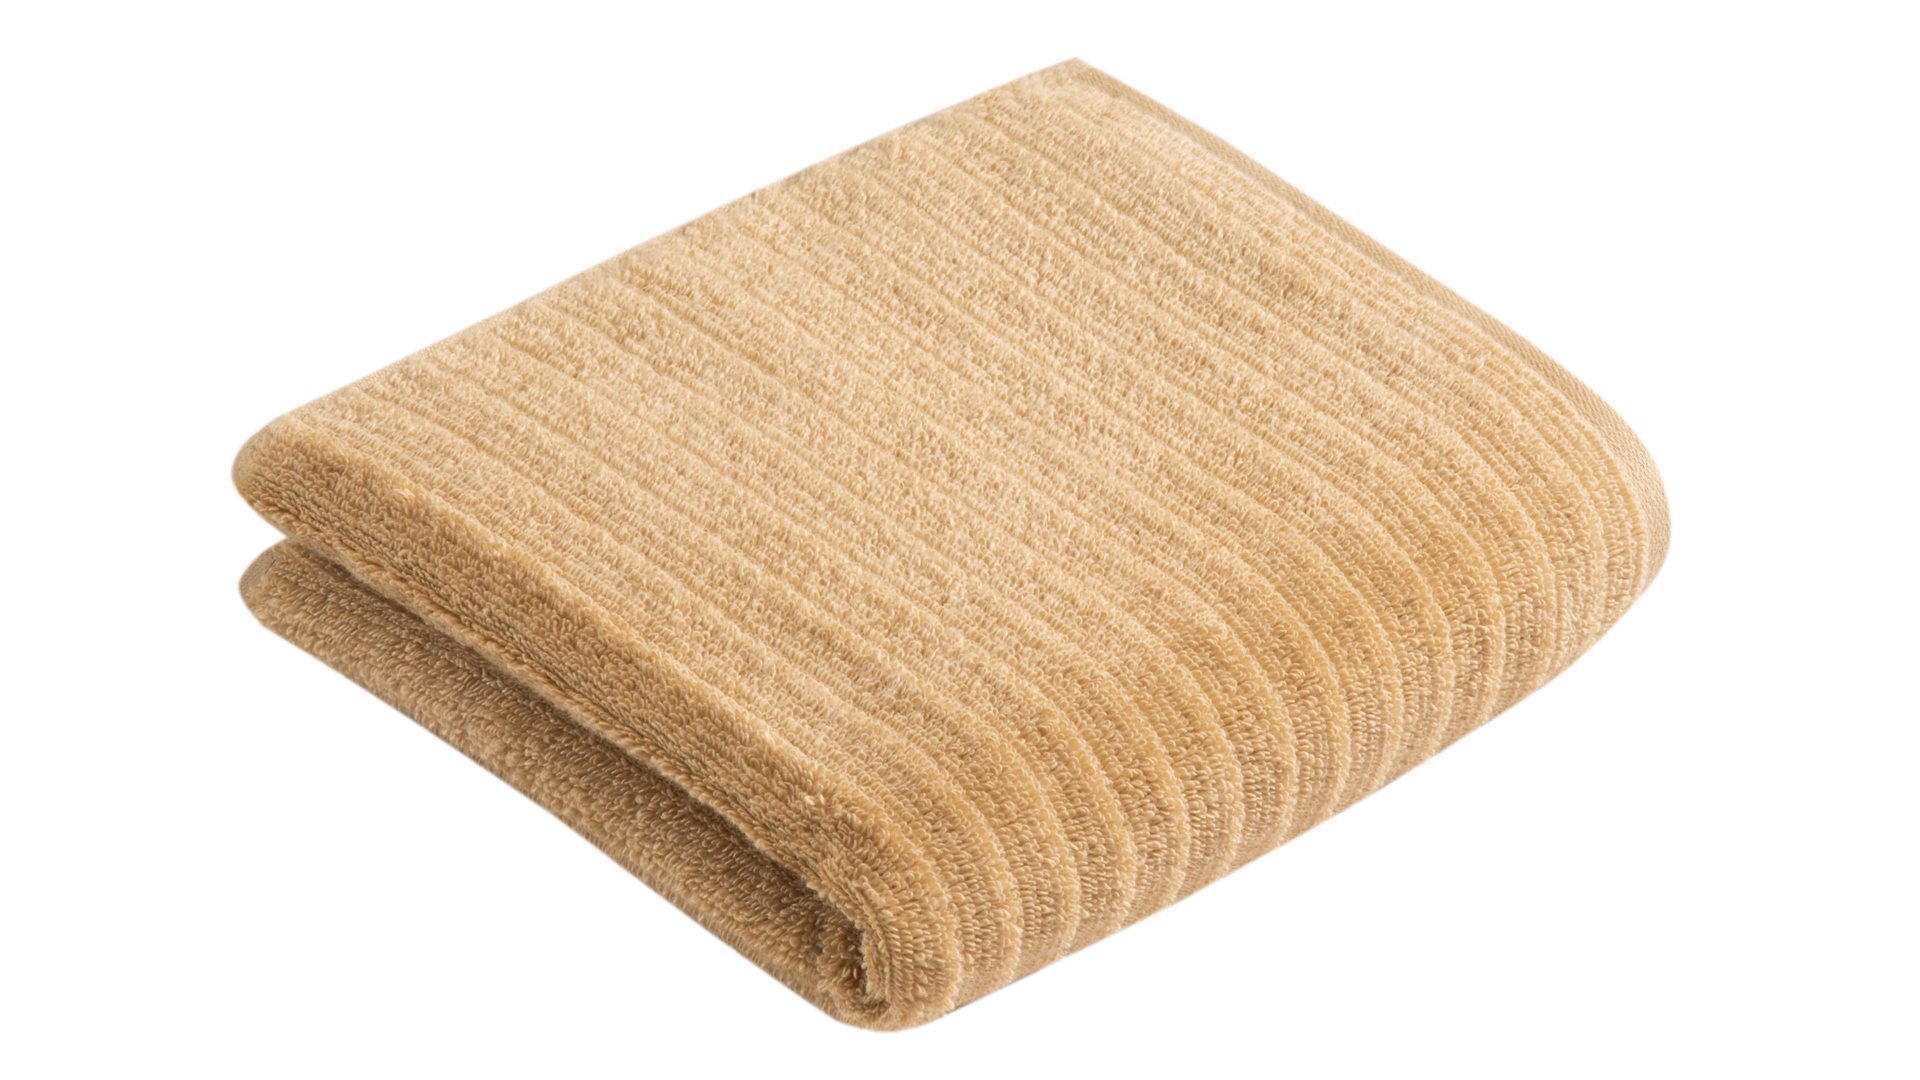 Handtuch Vossen aus Naturfaser in Hellbraun VOSSEN® Frottee-Serie Mystic - Handtuch granolafarbene Baumwolle - ca. 60 x 110 cm